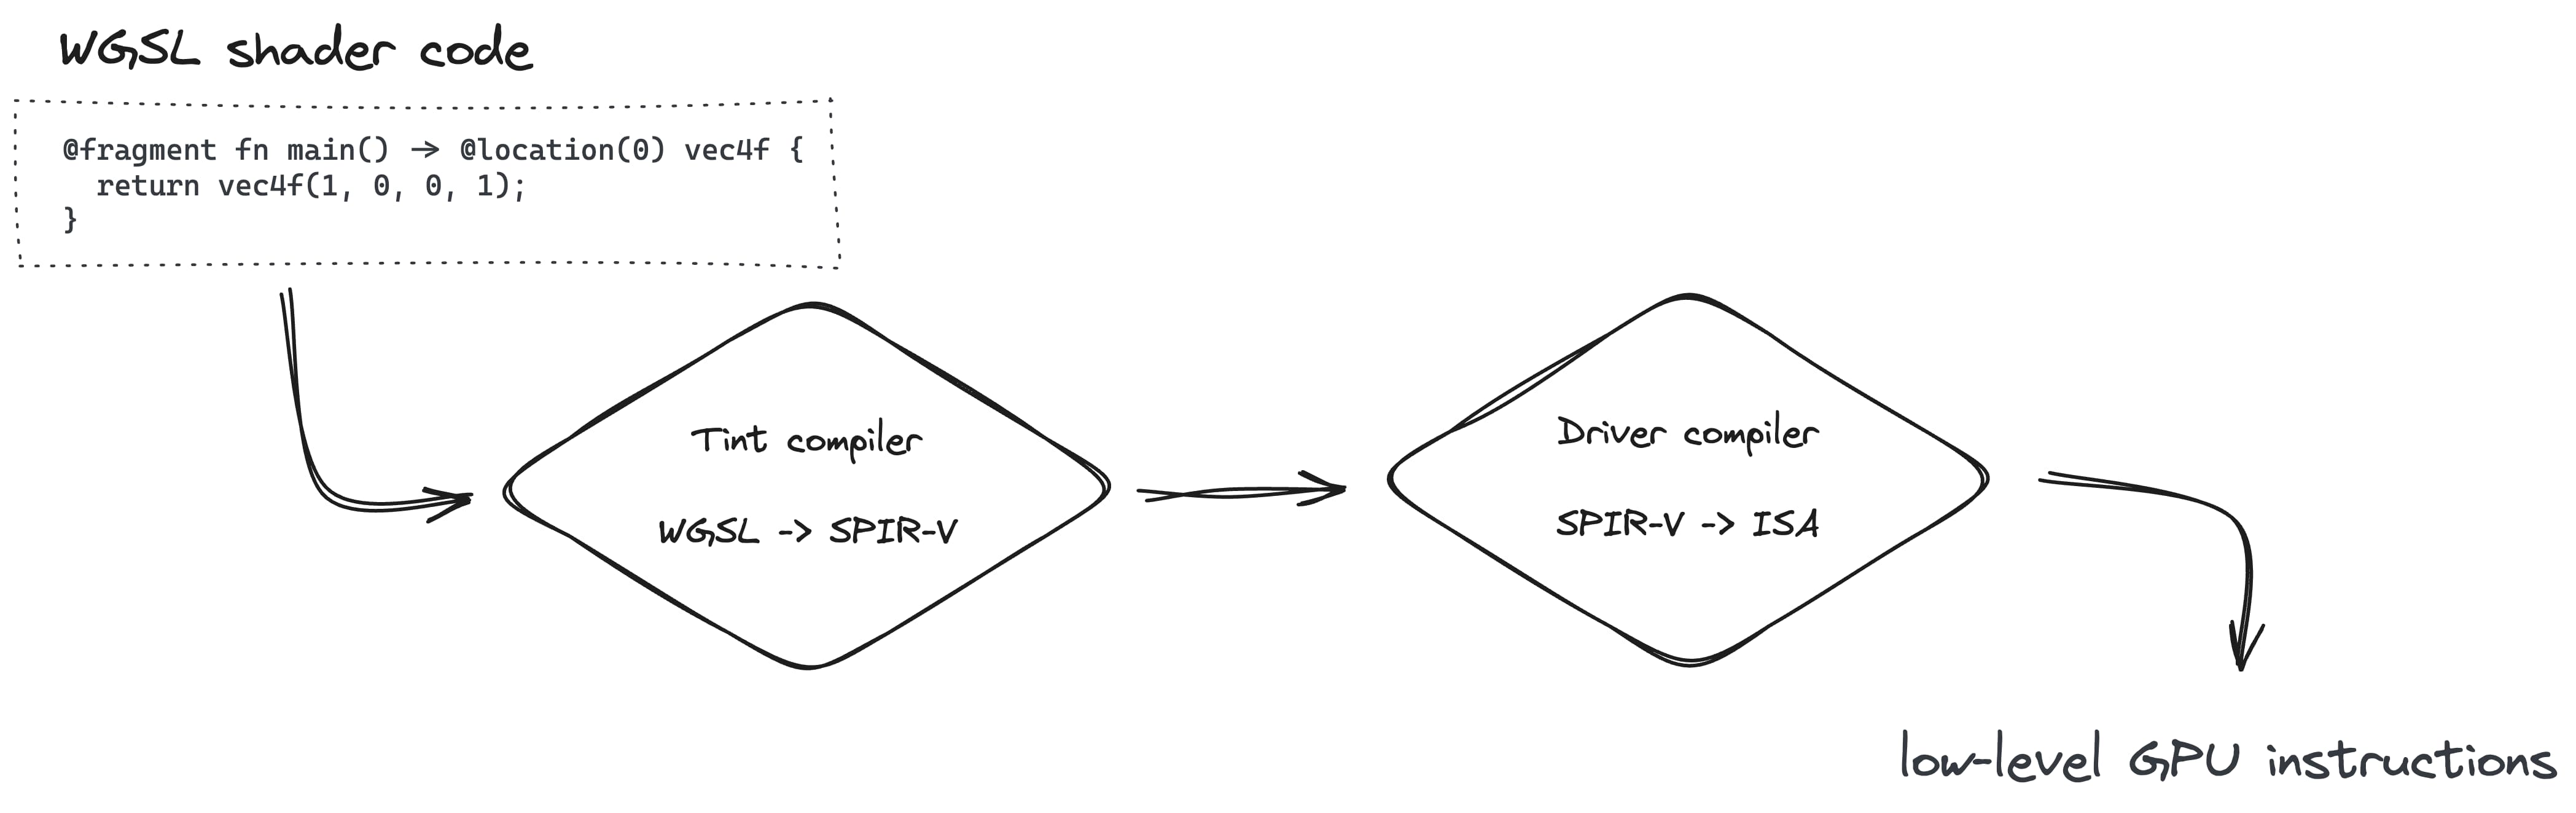 יצירת צינור עיבוד נתונים כוללת המרת WGSL ל-SPIR-V באמצעות המהדר של Tint, ולאחר מכן ל-ISA באמצעות מהדר (compiler) .